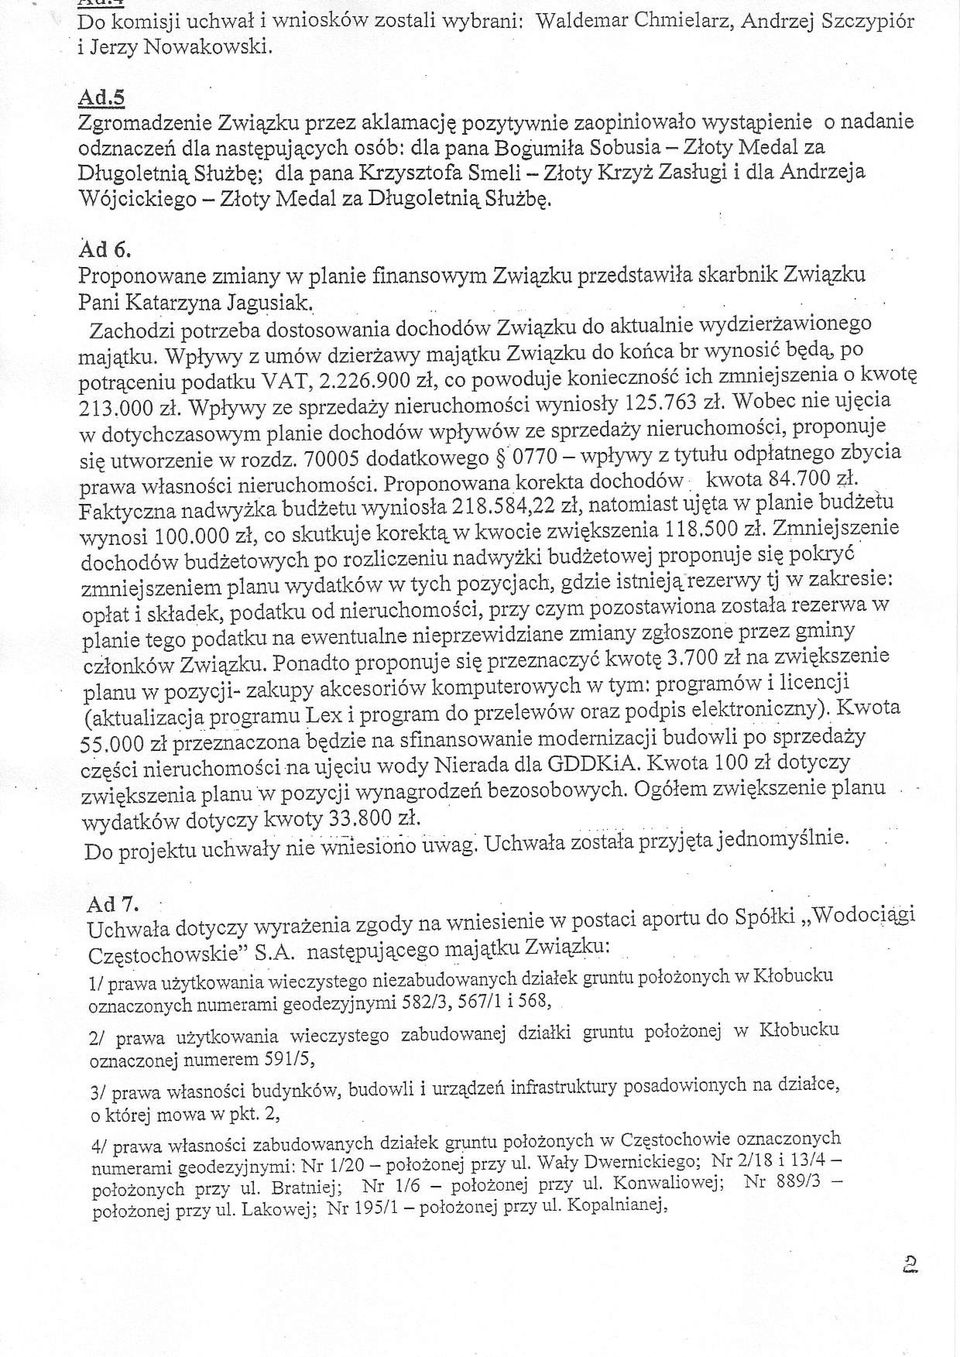 Krzysztofa Smeli - Zloty Ktzyz Zastagi i dla Andrzeia W6jcickiego - Zloty Medal za Dlugoletni4 Slu2bE. Ad 6.